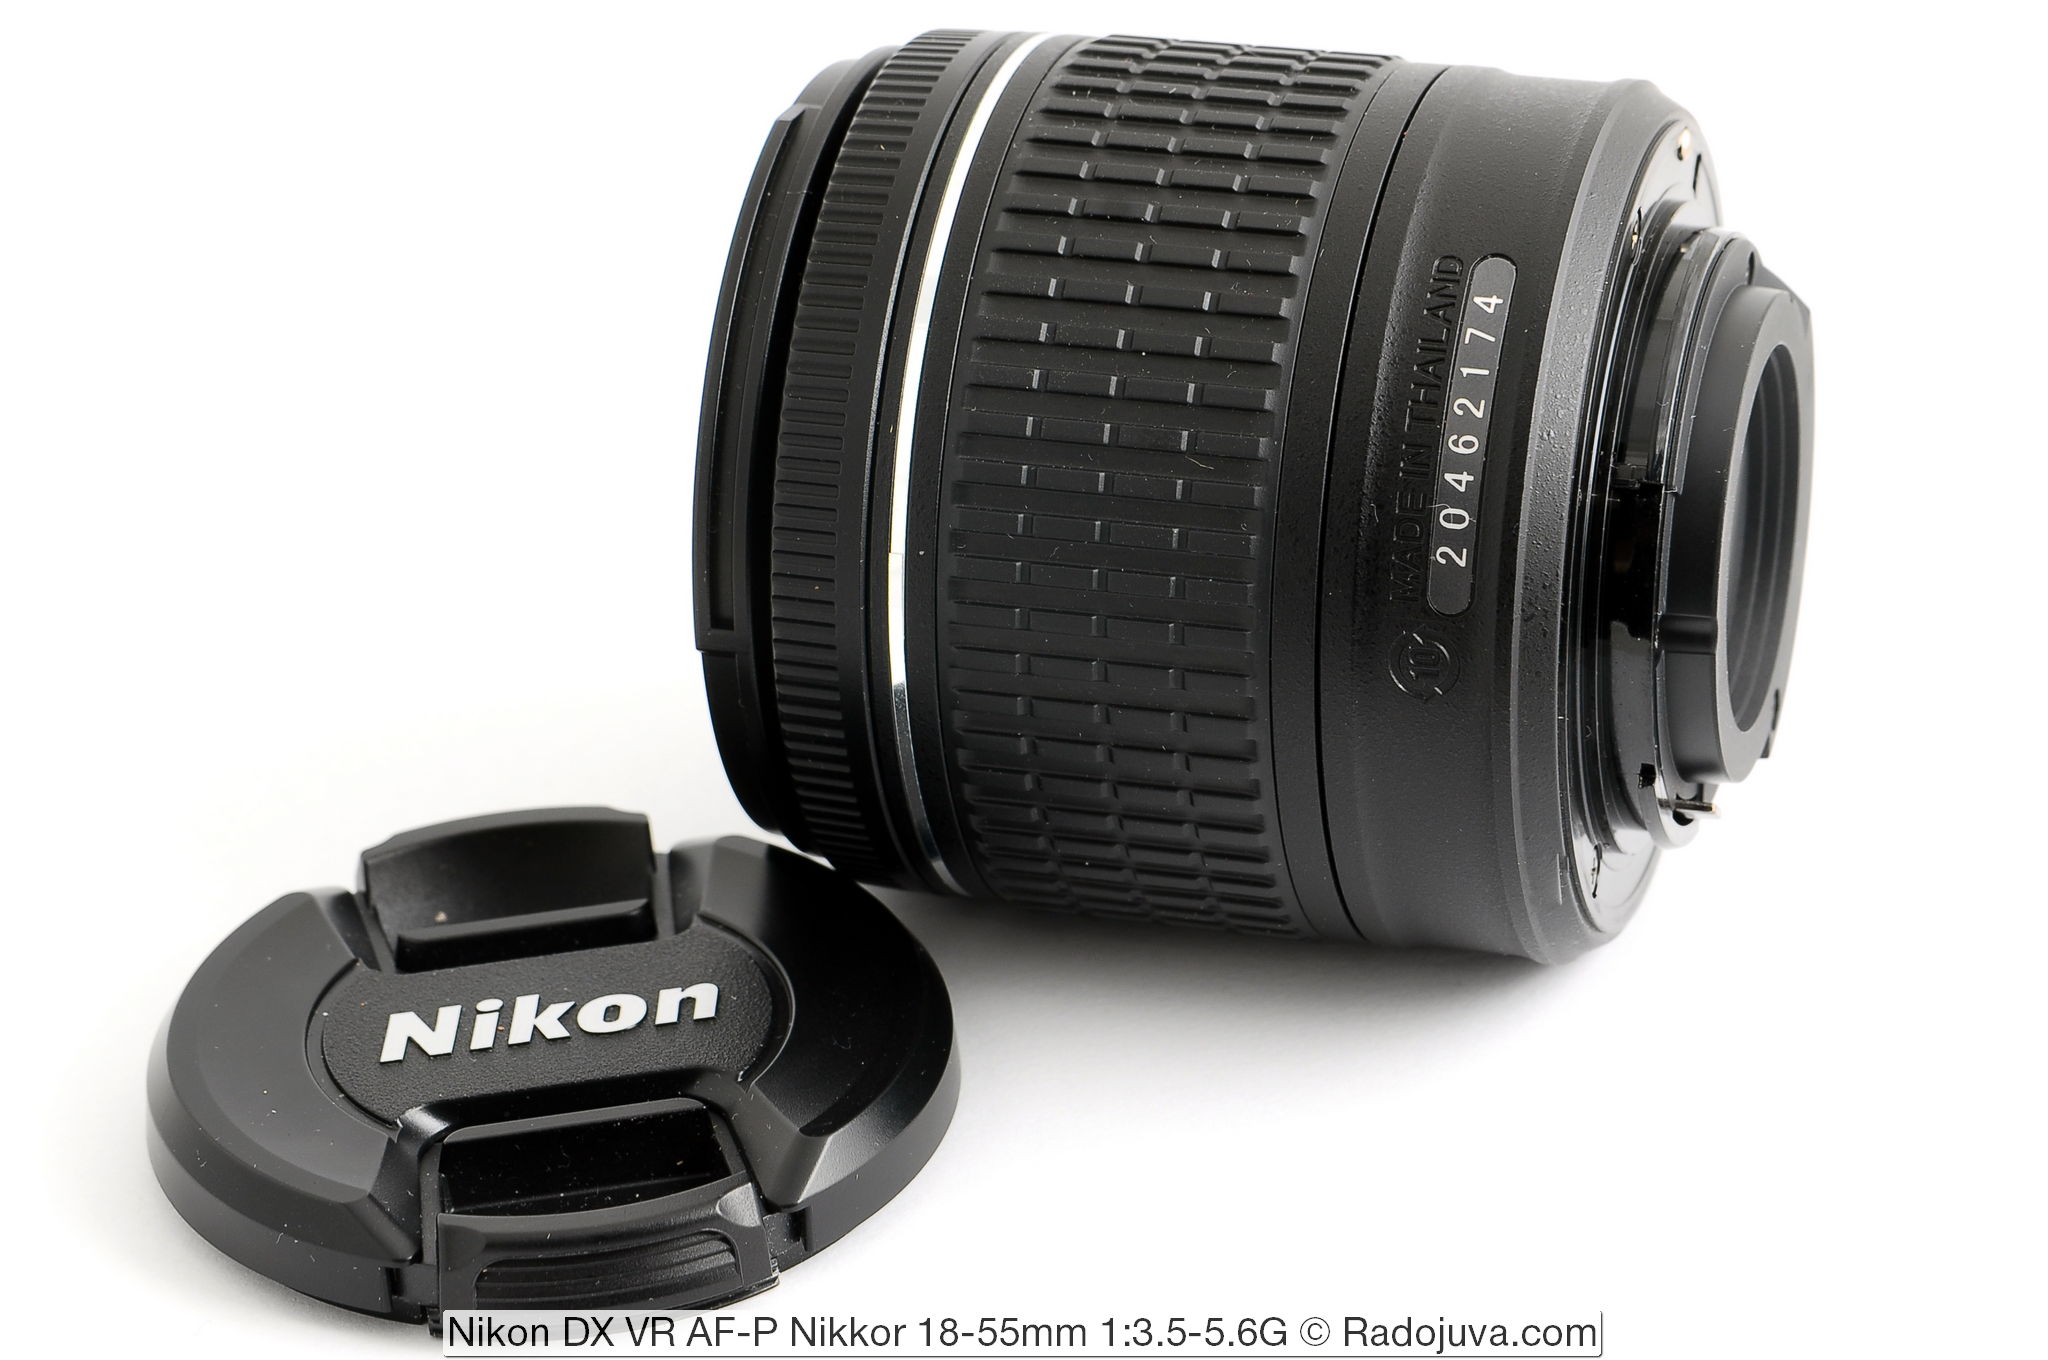 Nikon DX VR AF-P Nikkor 18-55mm 1: 3.5-5.6G lens